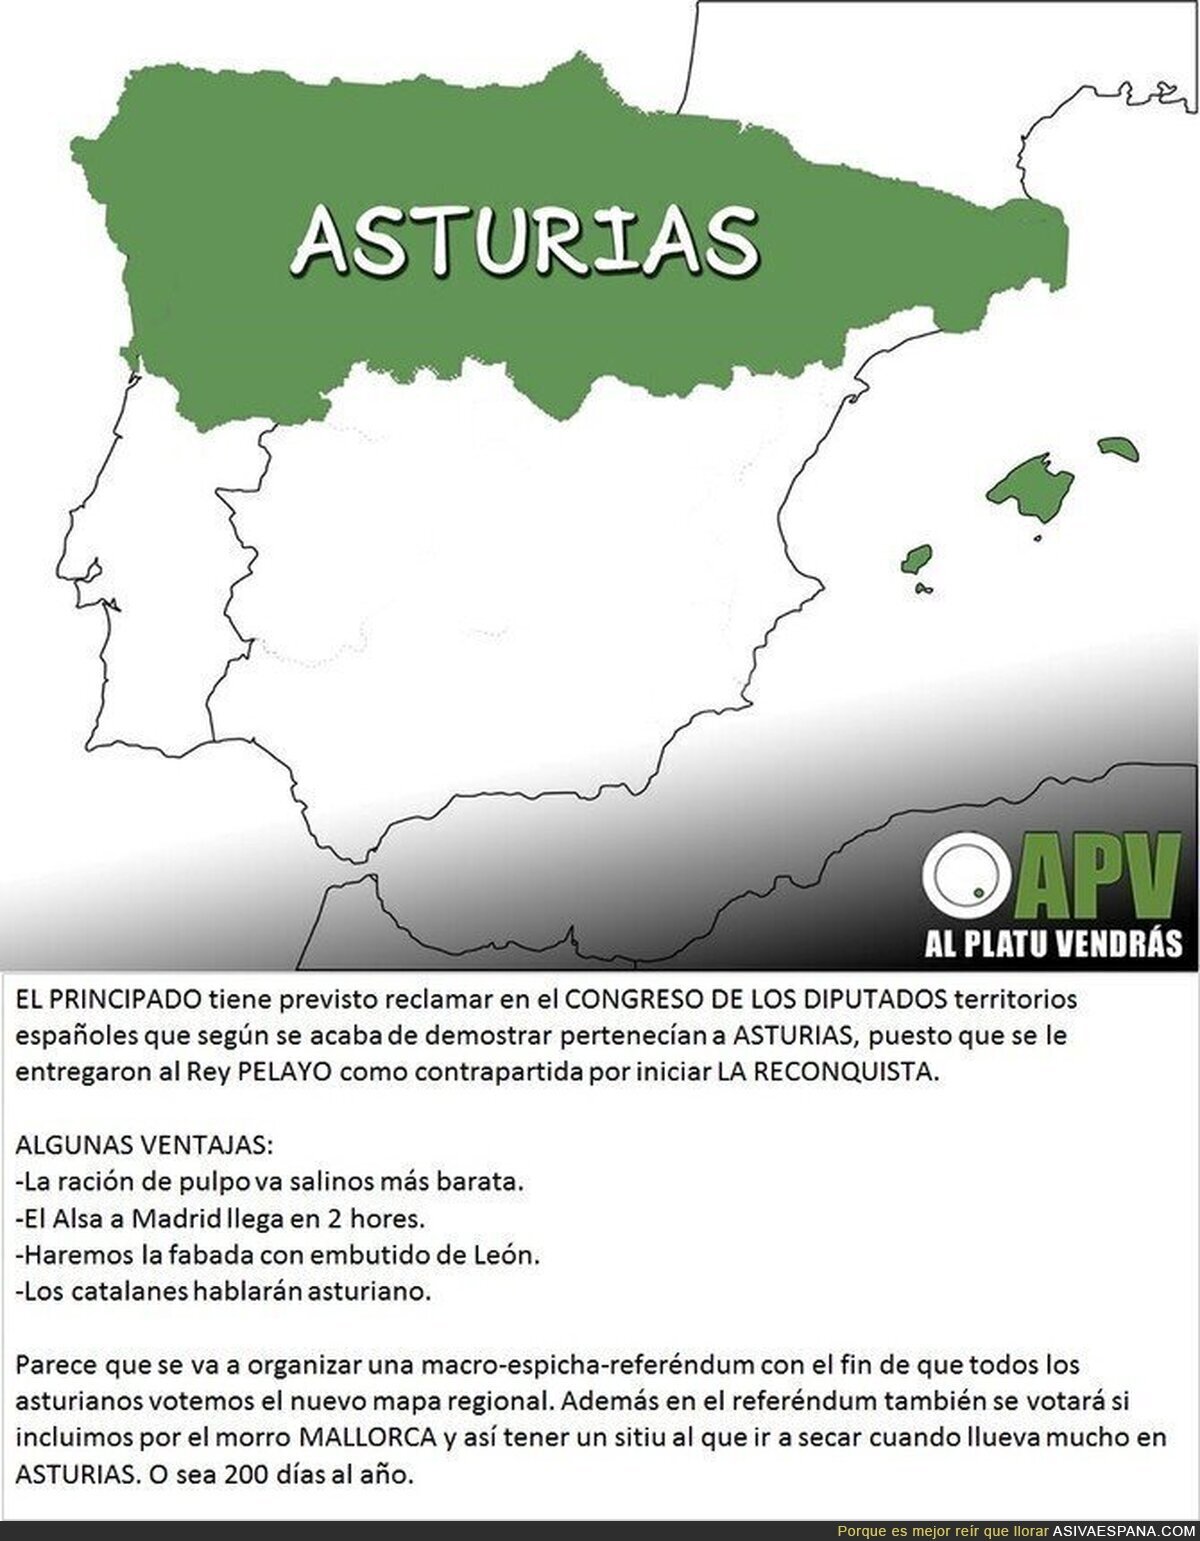 Asturias es España y lo demás tierra a conquistar